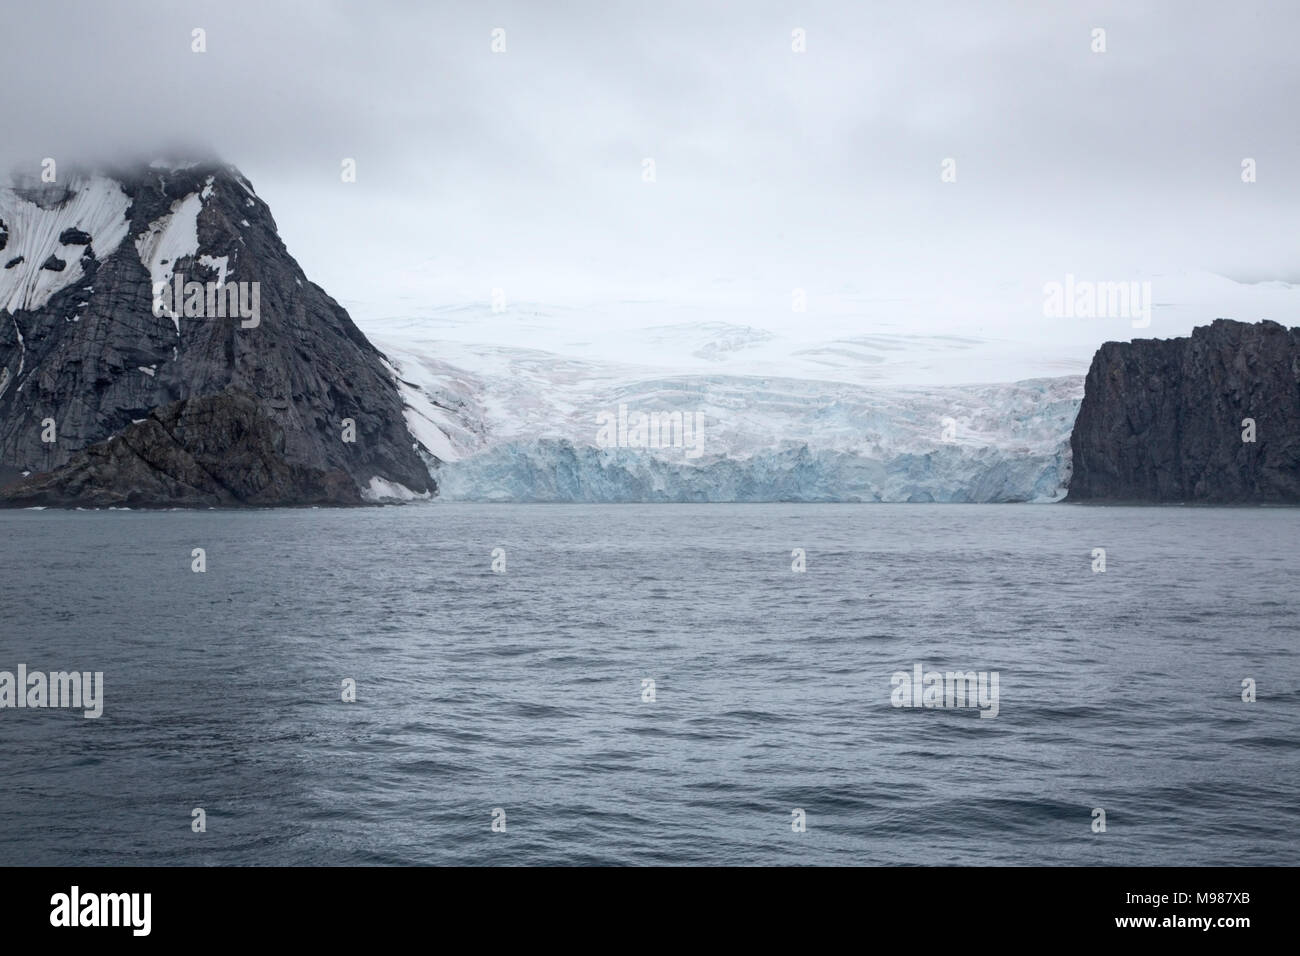 Anzeigen von Elephant Island, Antarktische Halbinsel, Antarktis, Eis, Berge bedeckt Stockfoto